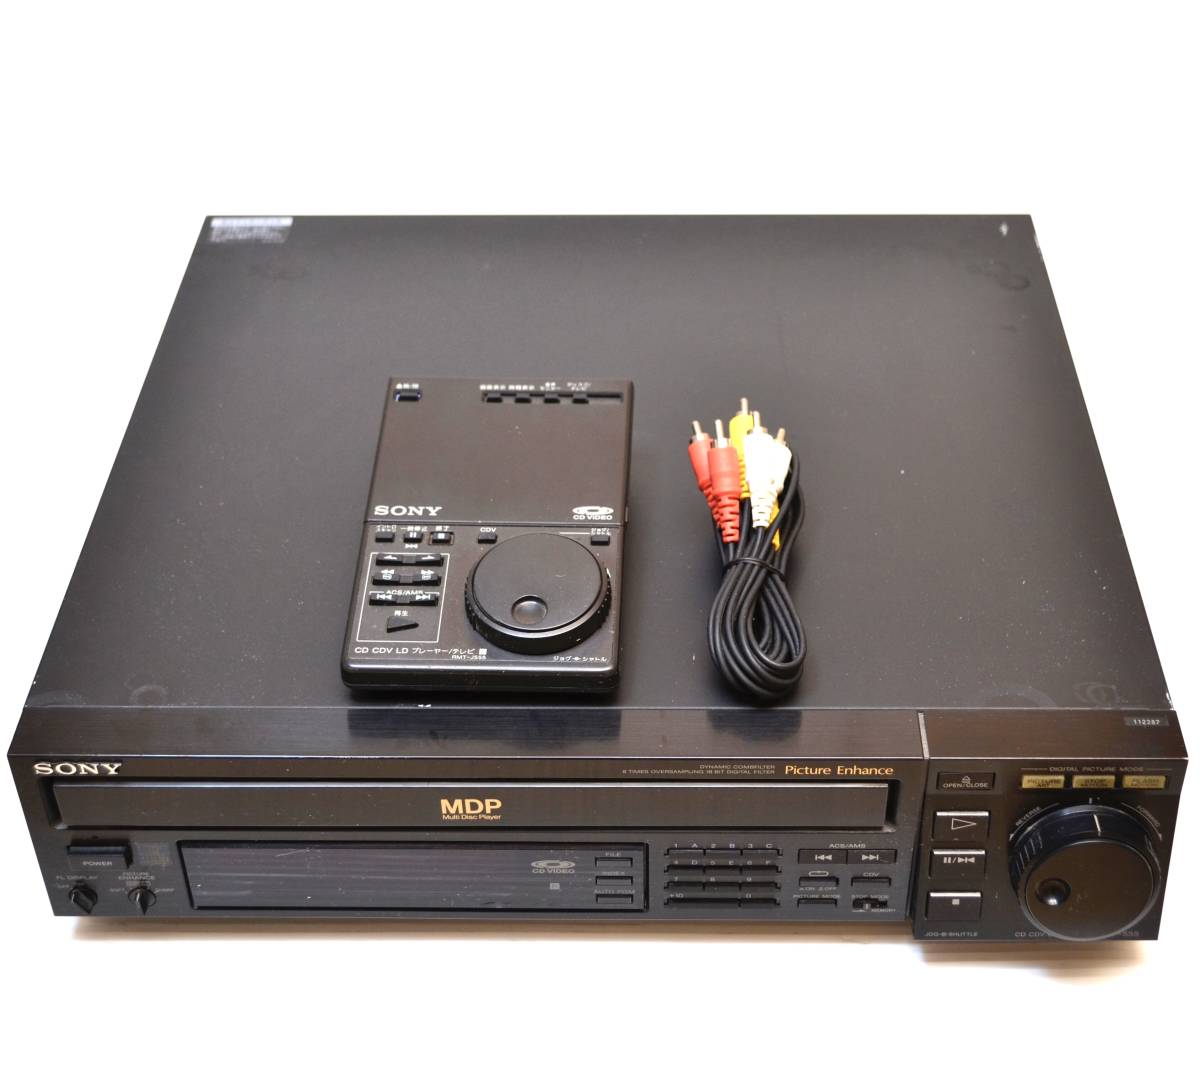 【純正リモコン付/稀少美品】SONY ソニー MDP-555 RMT-J555 LD CDV CD レーザーディスクプレーヤー Laser Disc Player MDP-999 の廉価版_画像1